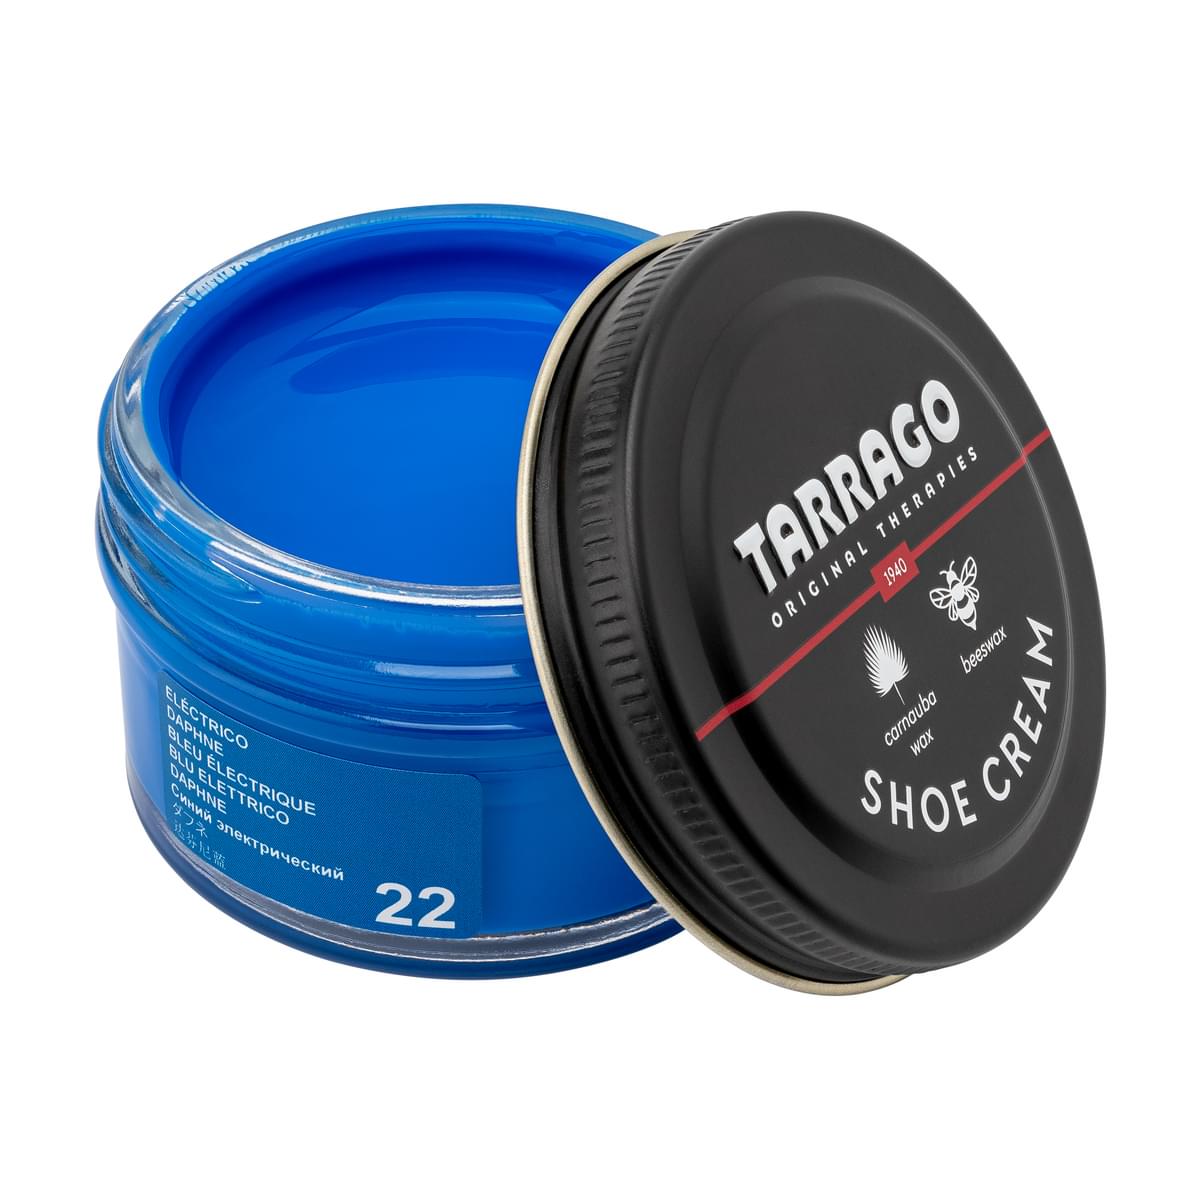 Tarrago Shoe Cream  - Daphne Blue - 22